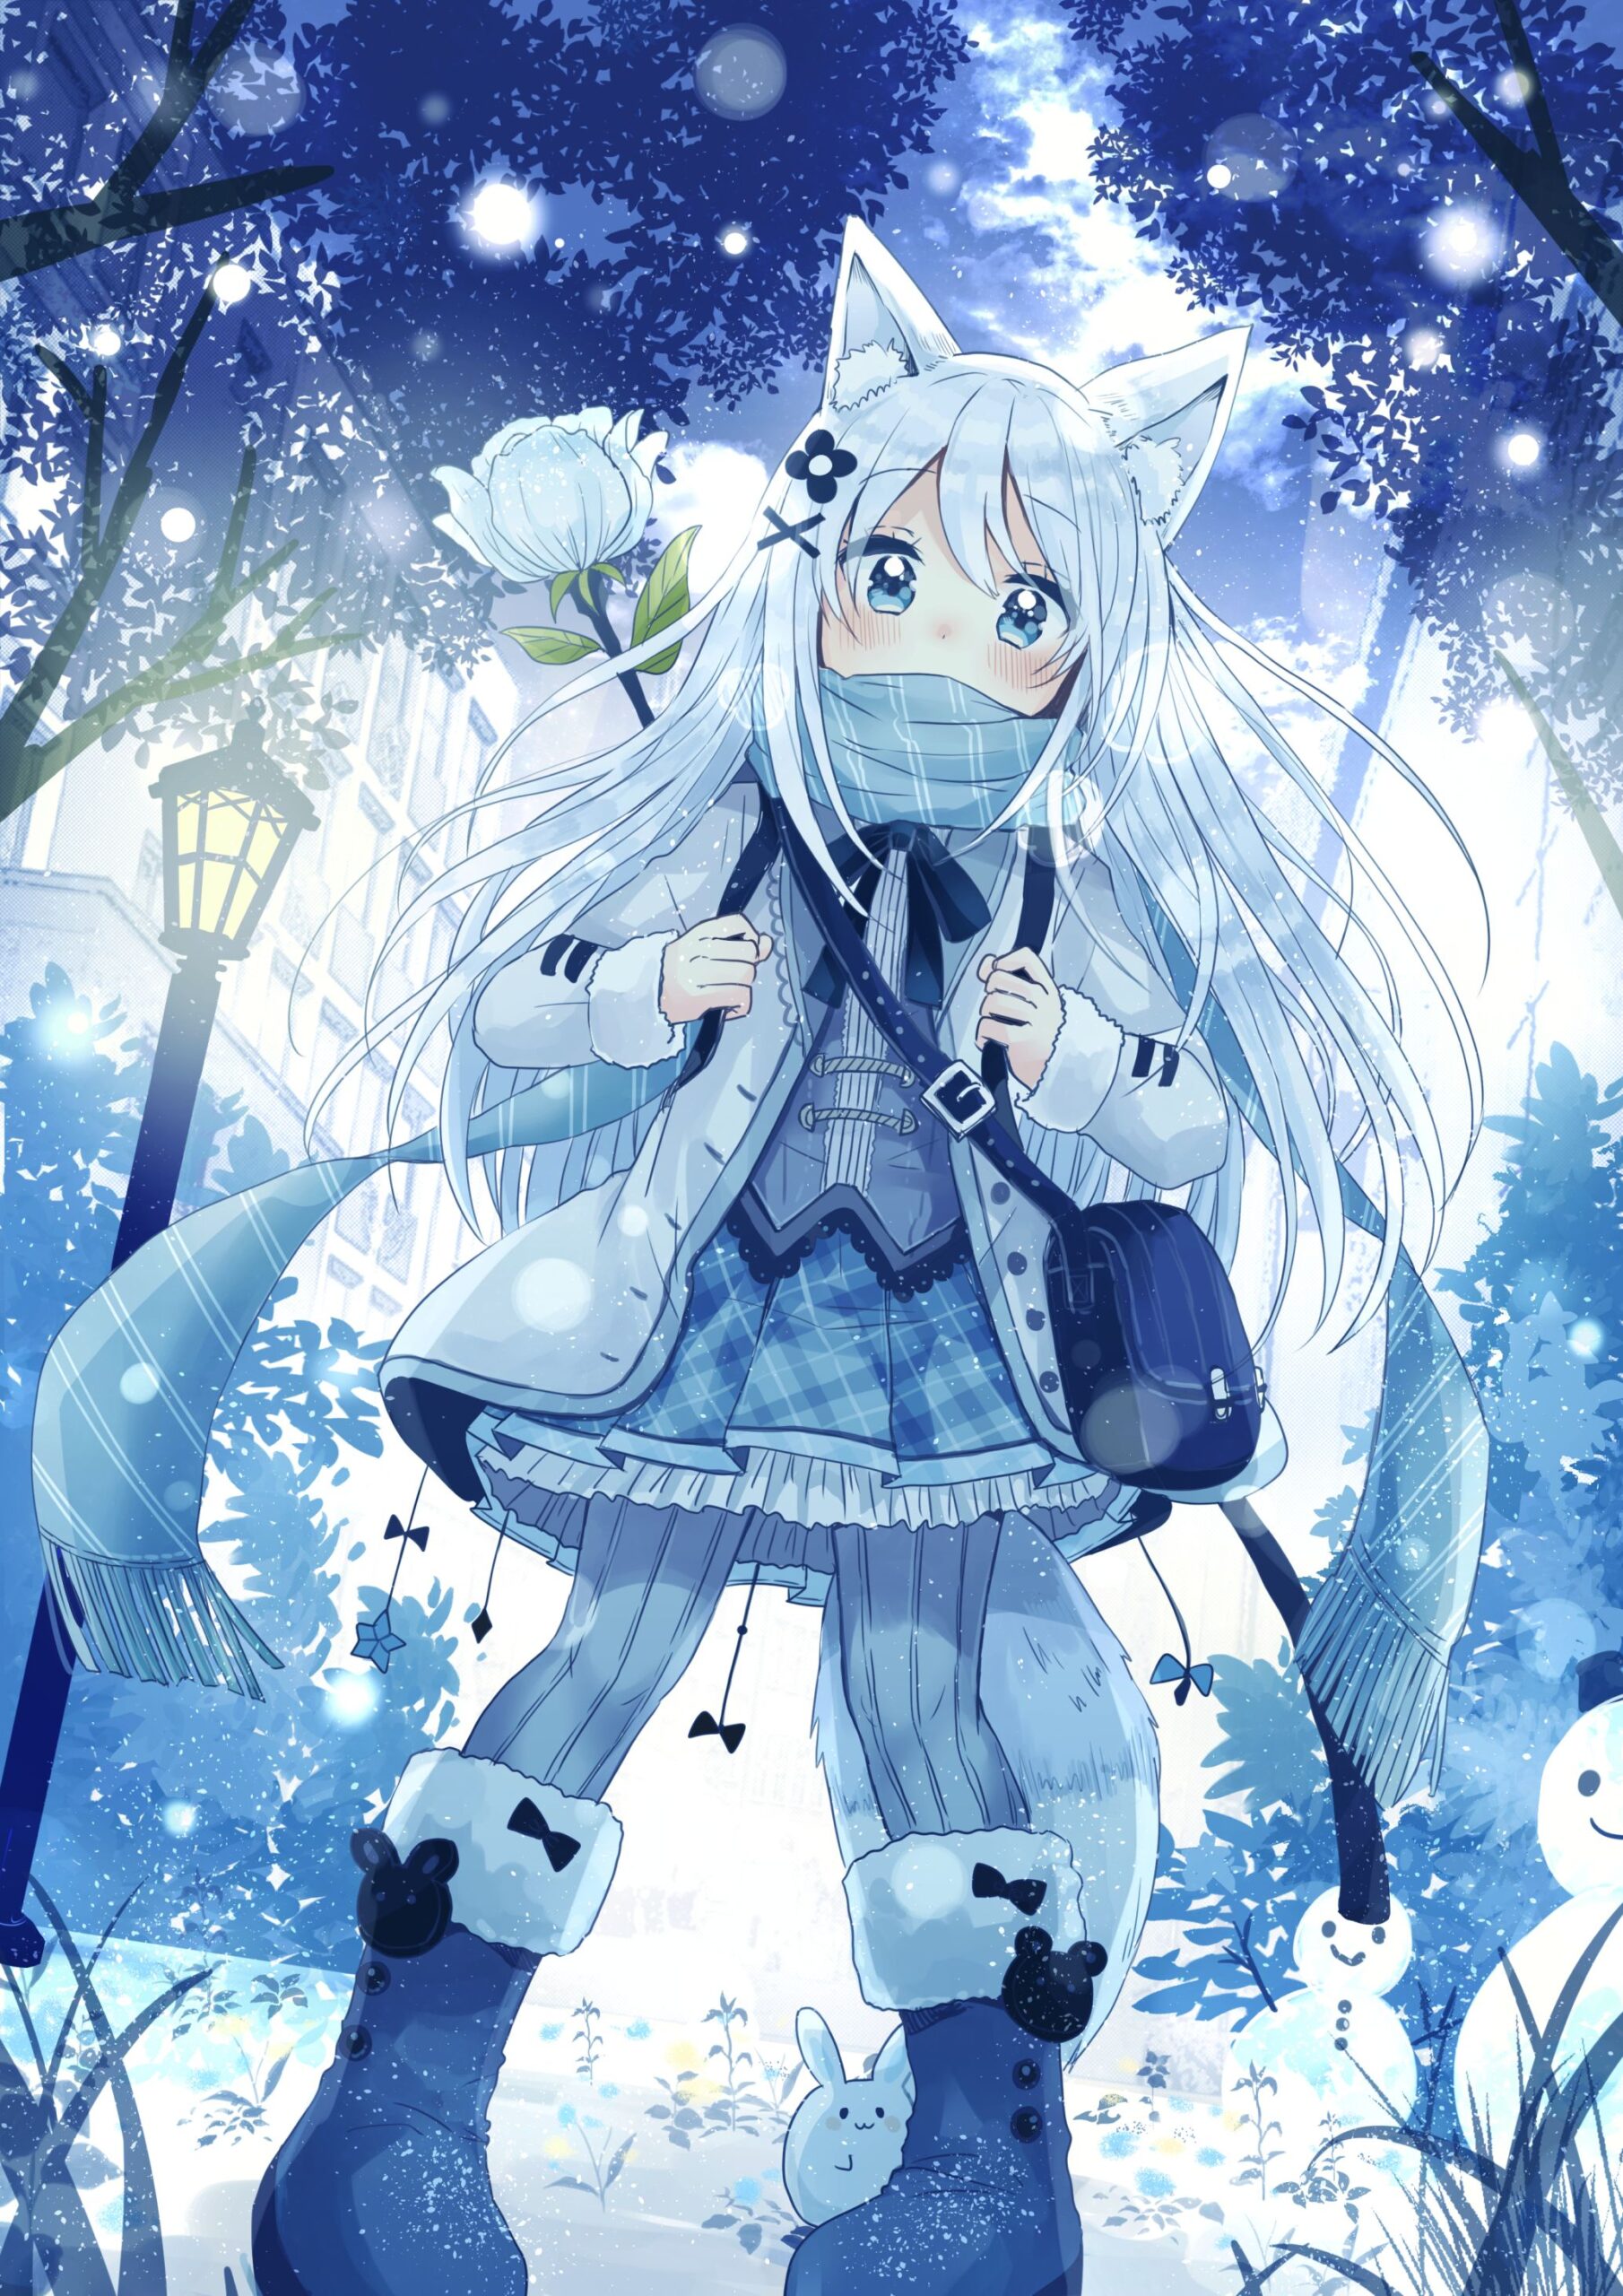 Anime mùa đông sẽ đưa bạn đến một thế giới tuyết phủ và cái lạnh khắc nghiệt nhưng cũng rất tuyệt vời. Với những nhân vật khác nhau và cốt truyện hấp dẫn, anime mùa đông sẽ mang đến cho bạn những giây phút giải trí thú vị và ấn tượng.